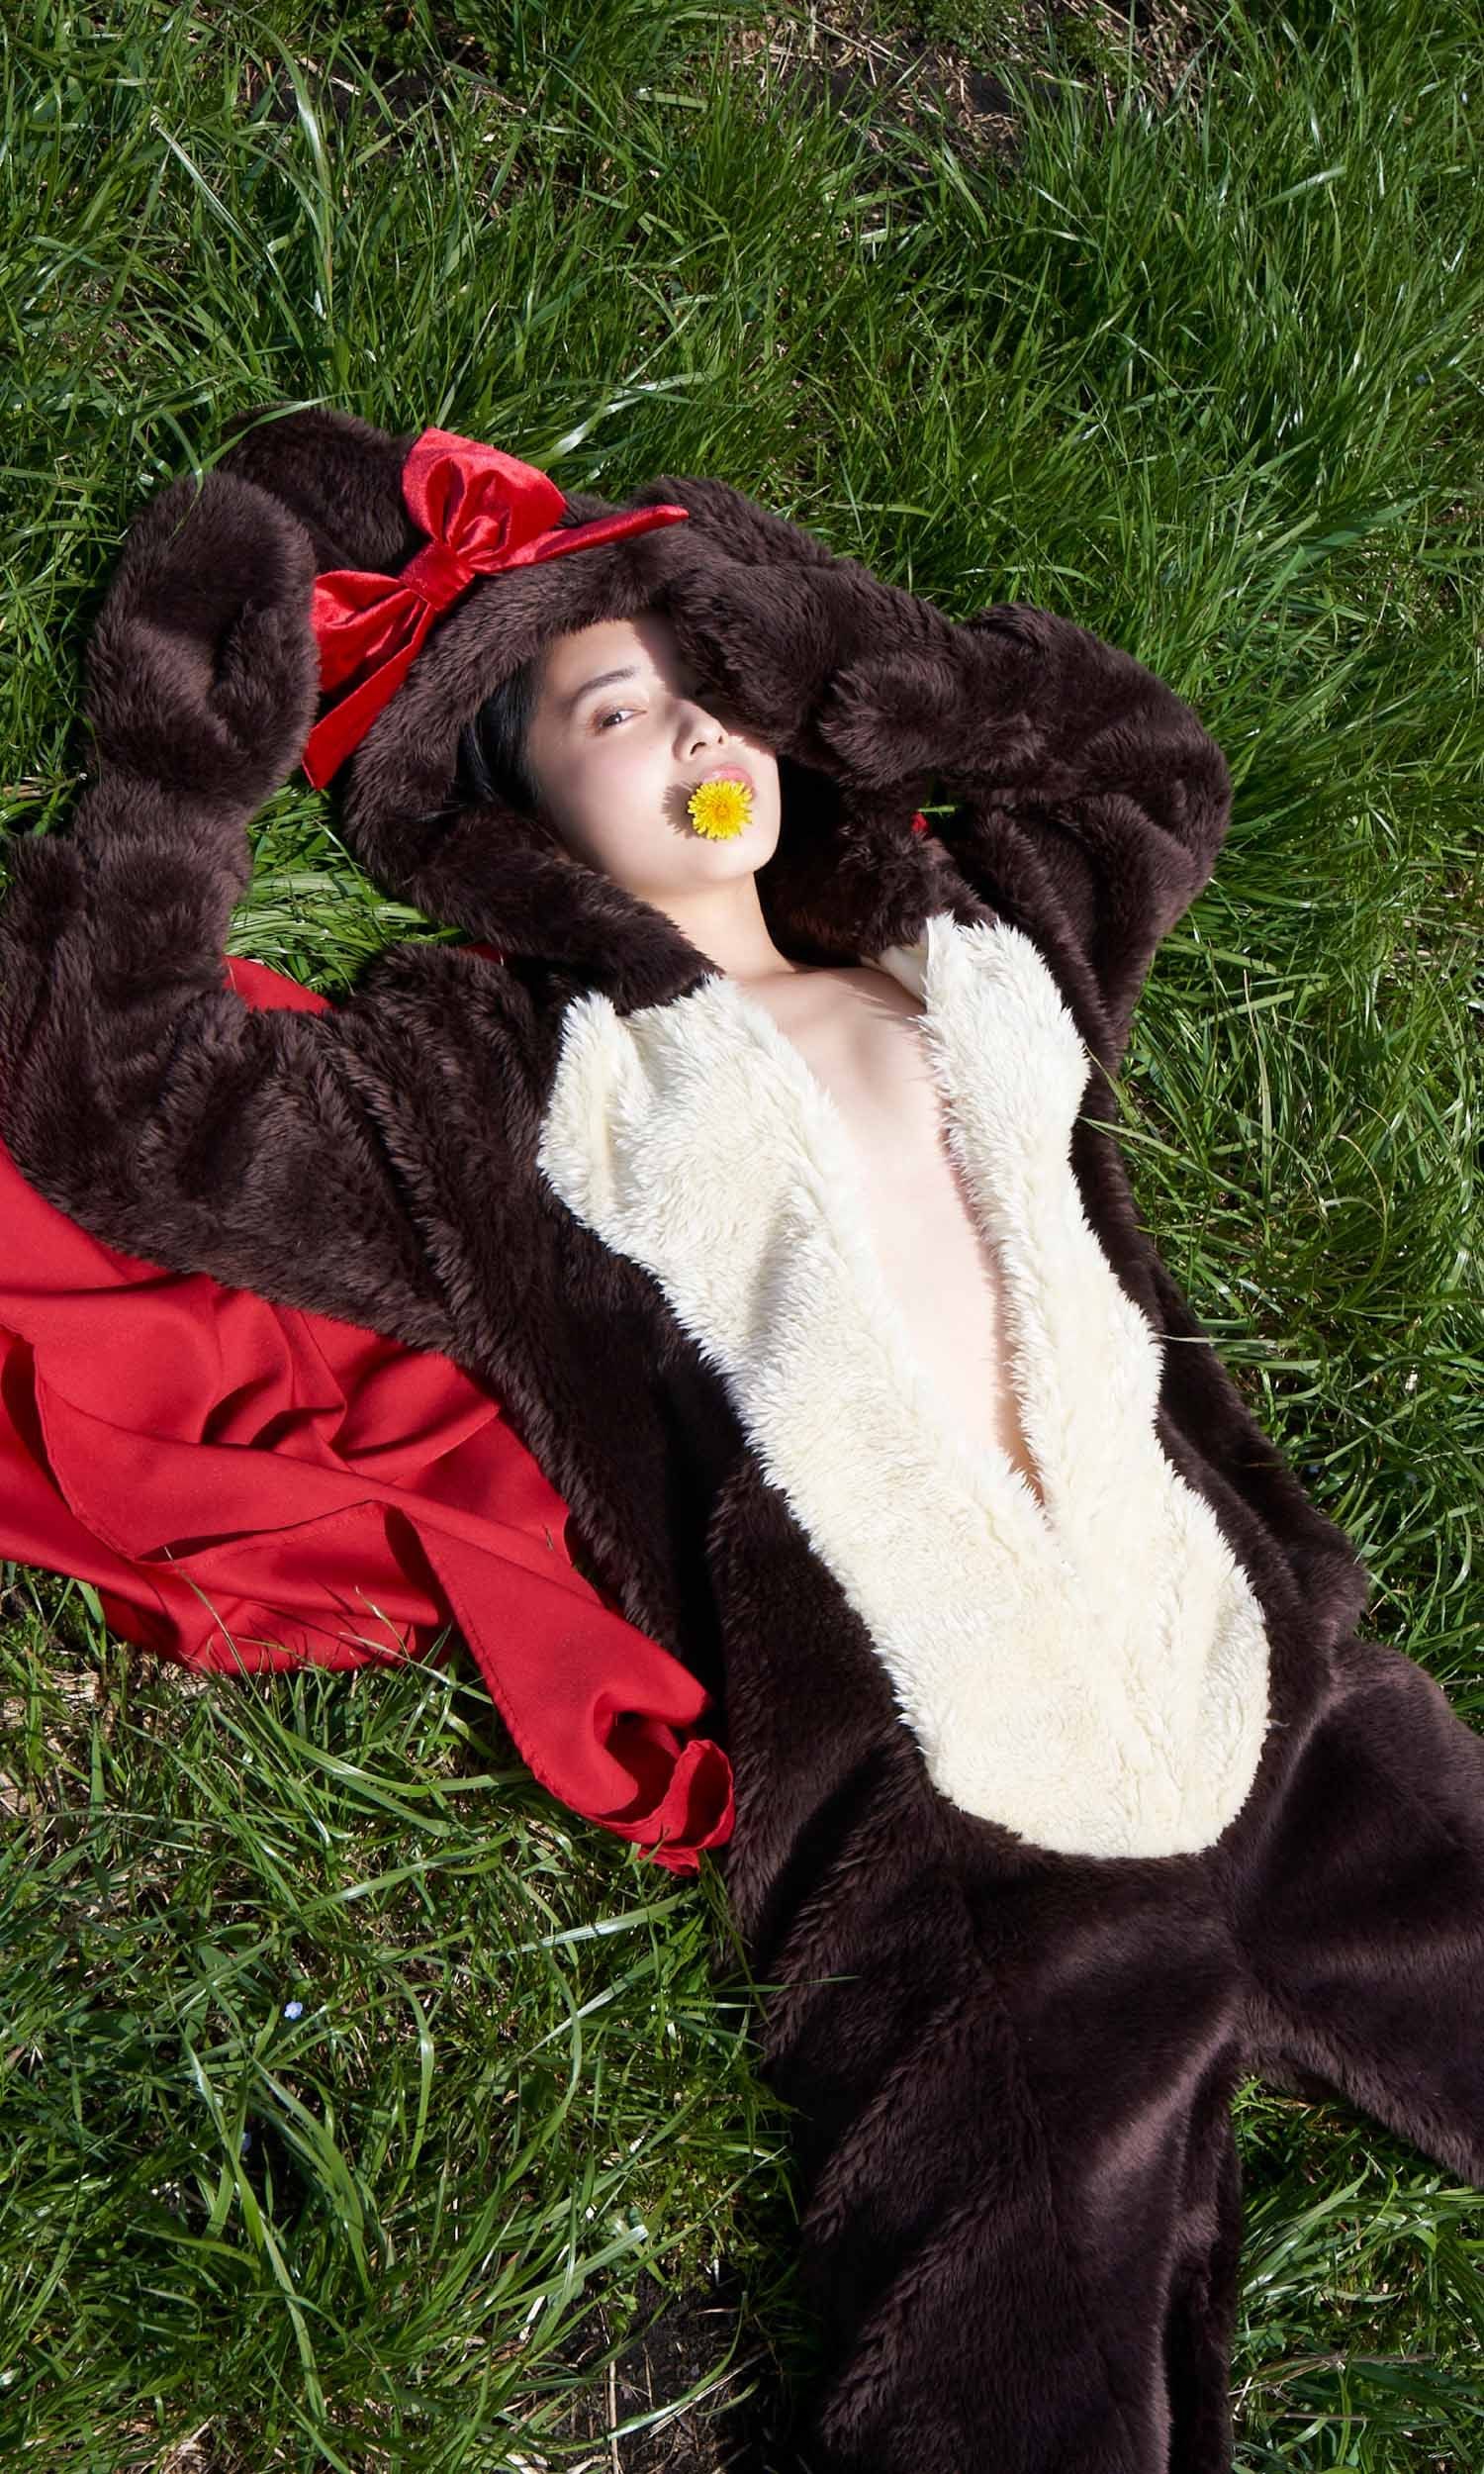 21 歲短髮正妹「大原梓」久違拍攝寫真  比基尼示範各種性感躺姿